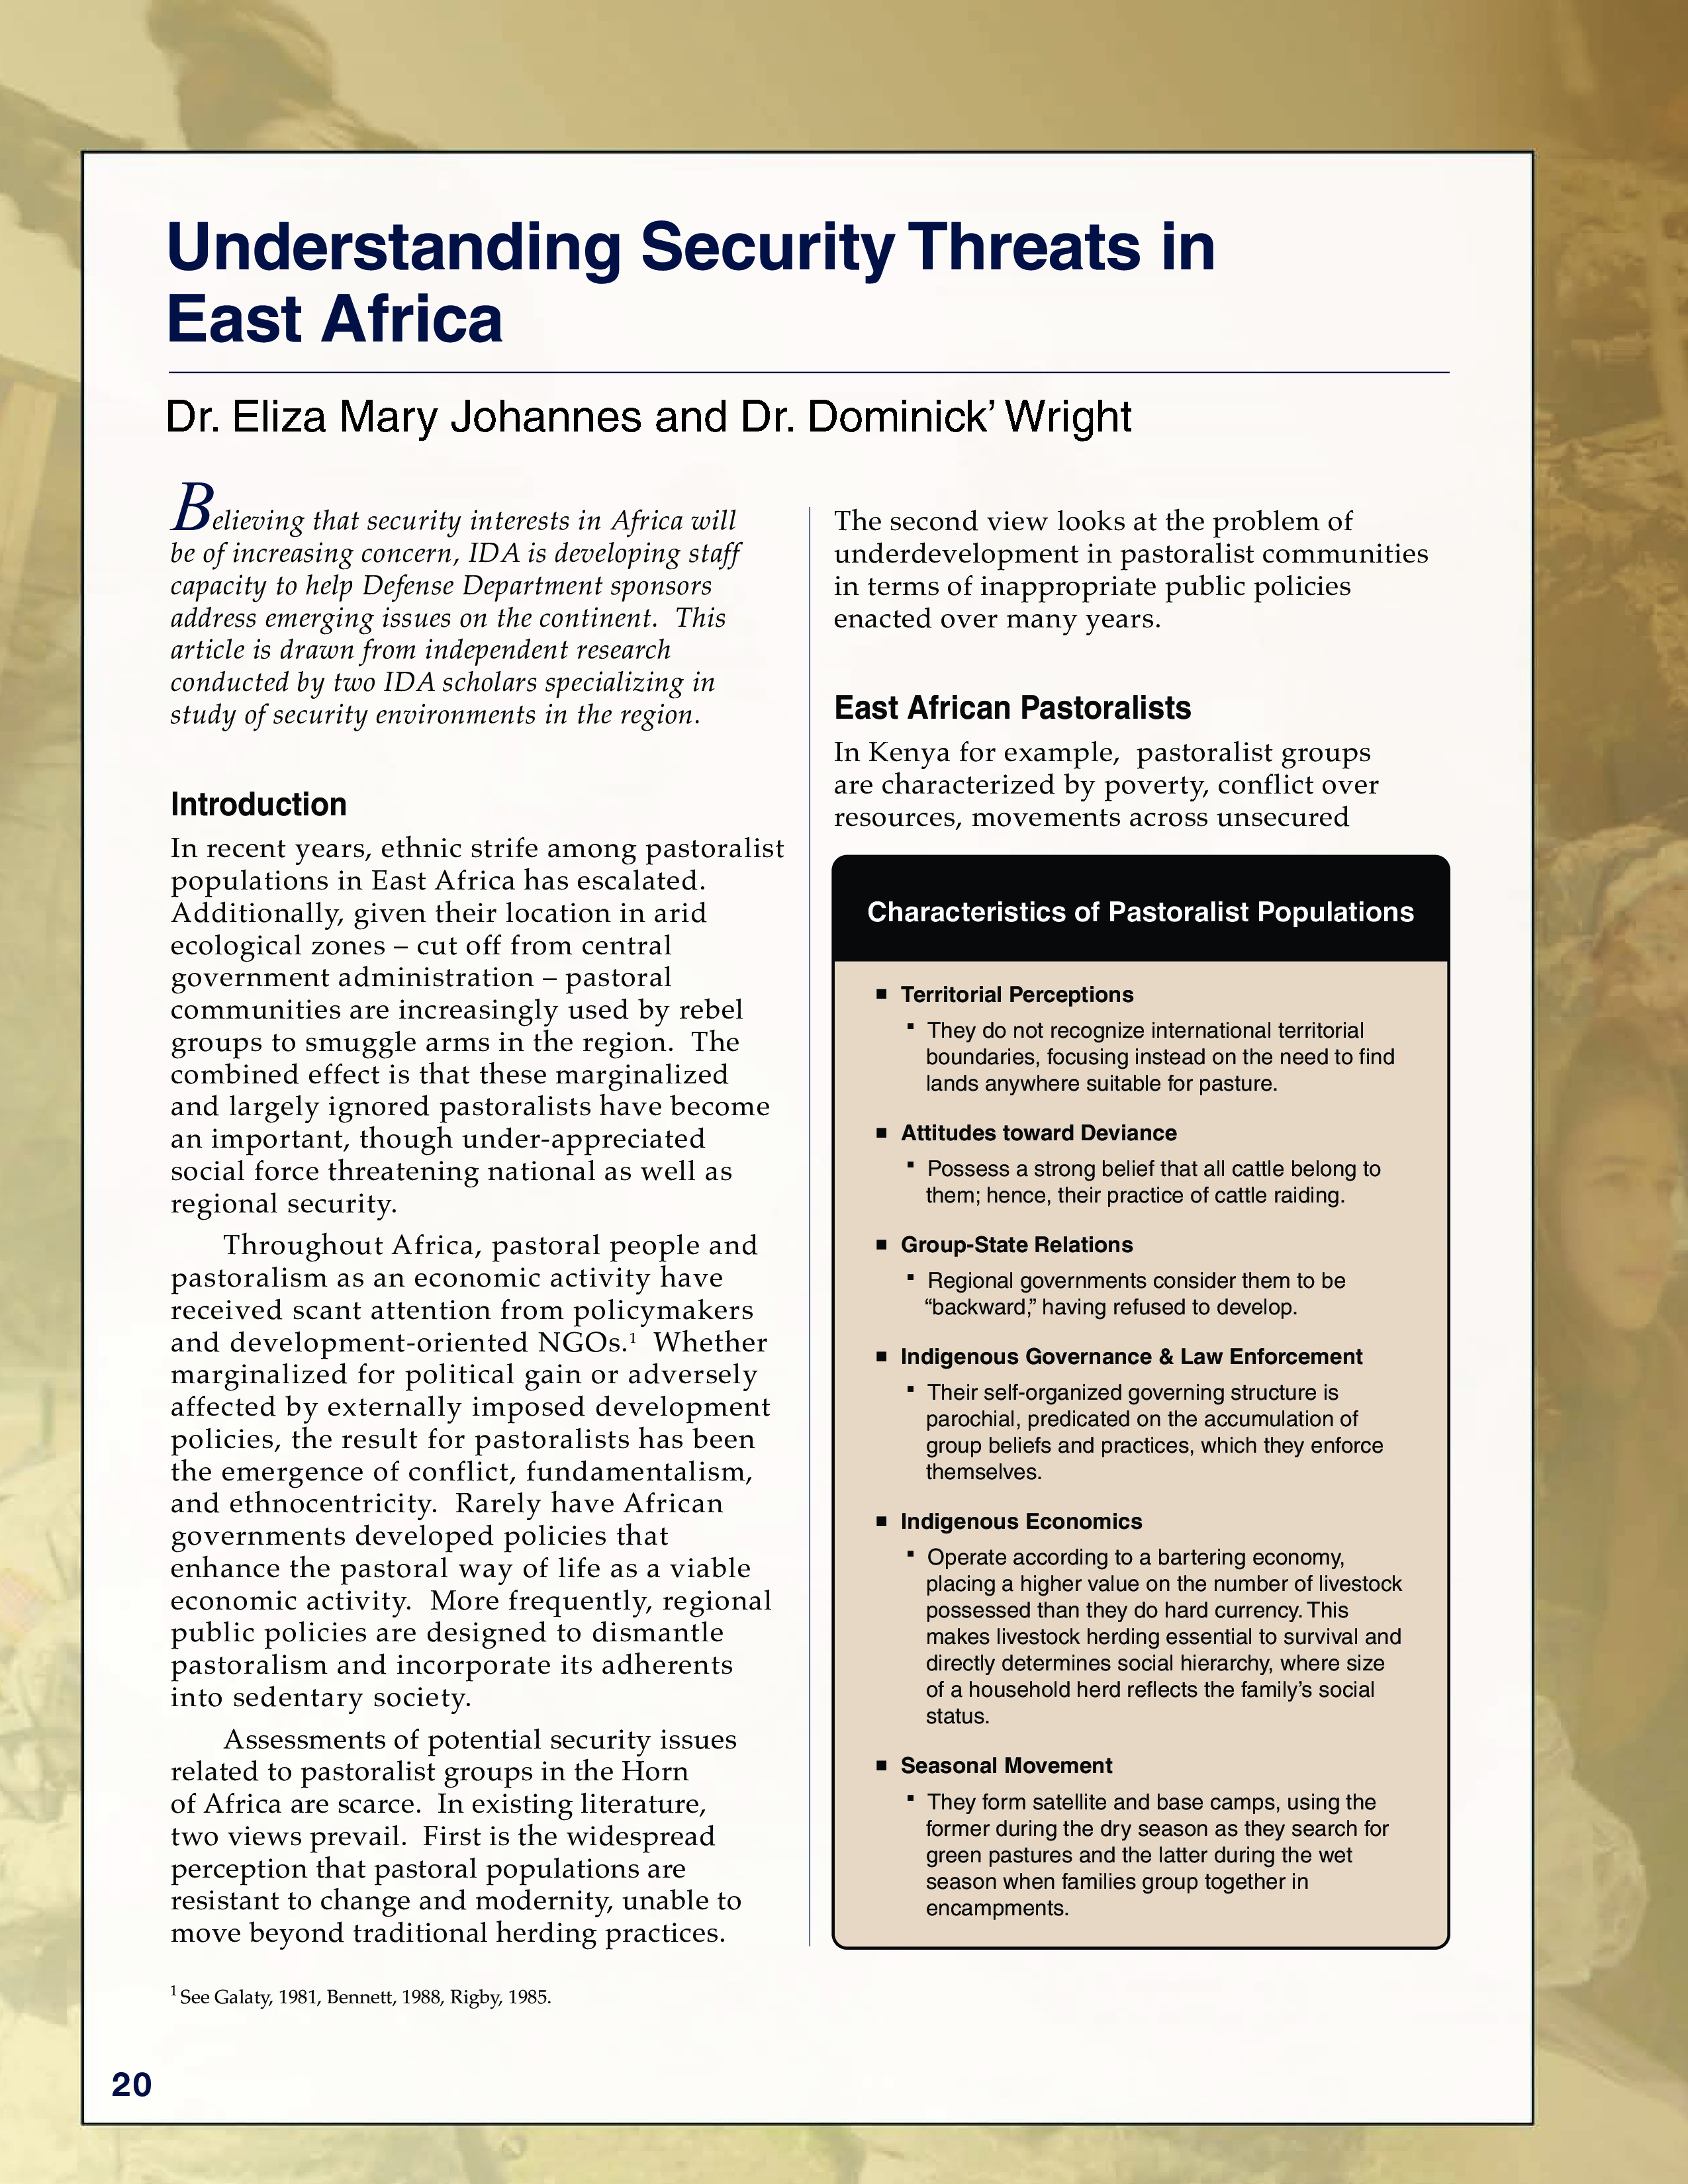 Understanding Security Threats in East Africa